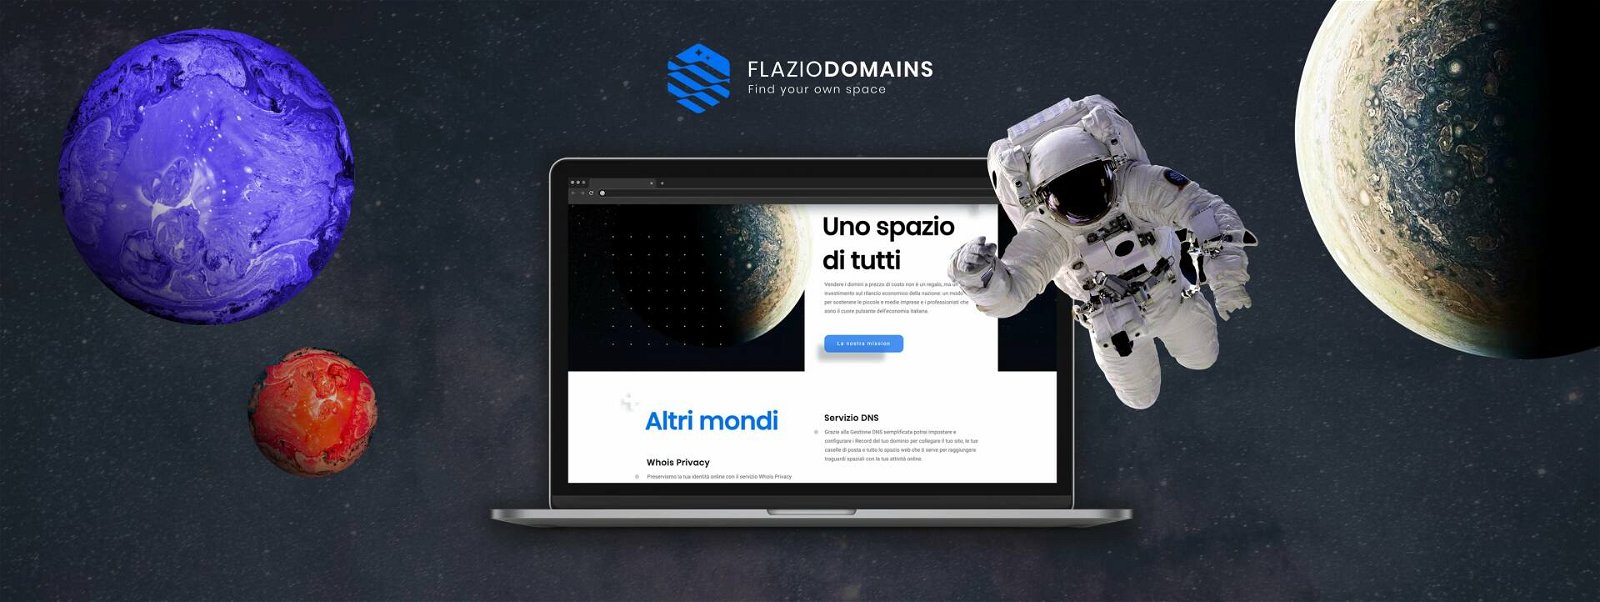 Immagine di Flazio lancia Domains, arrivano in Italia i domini più economici d’Europa